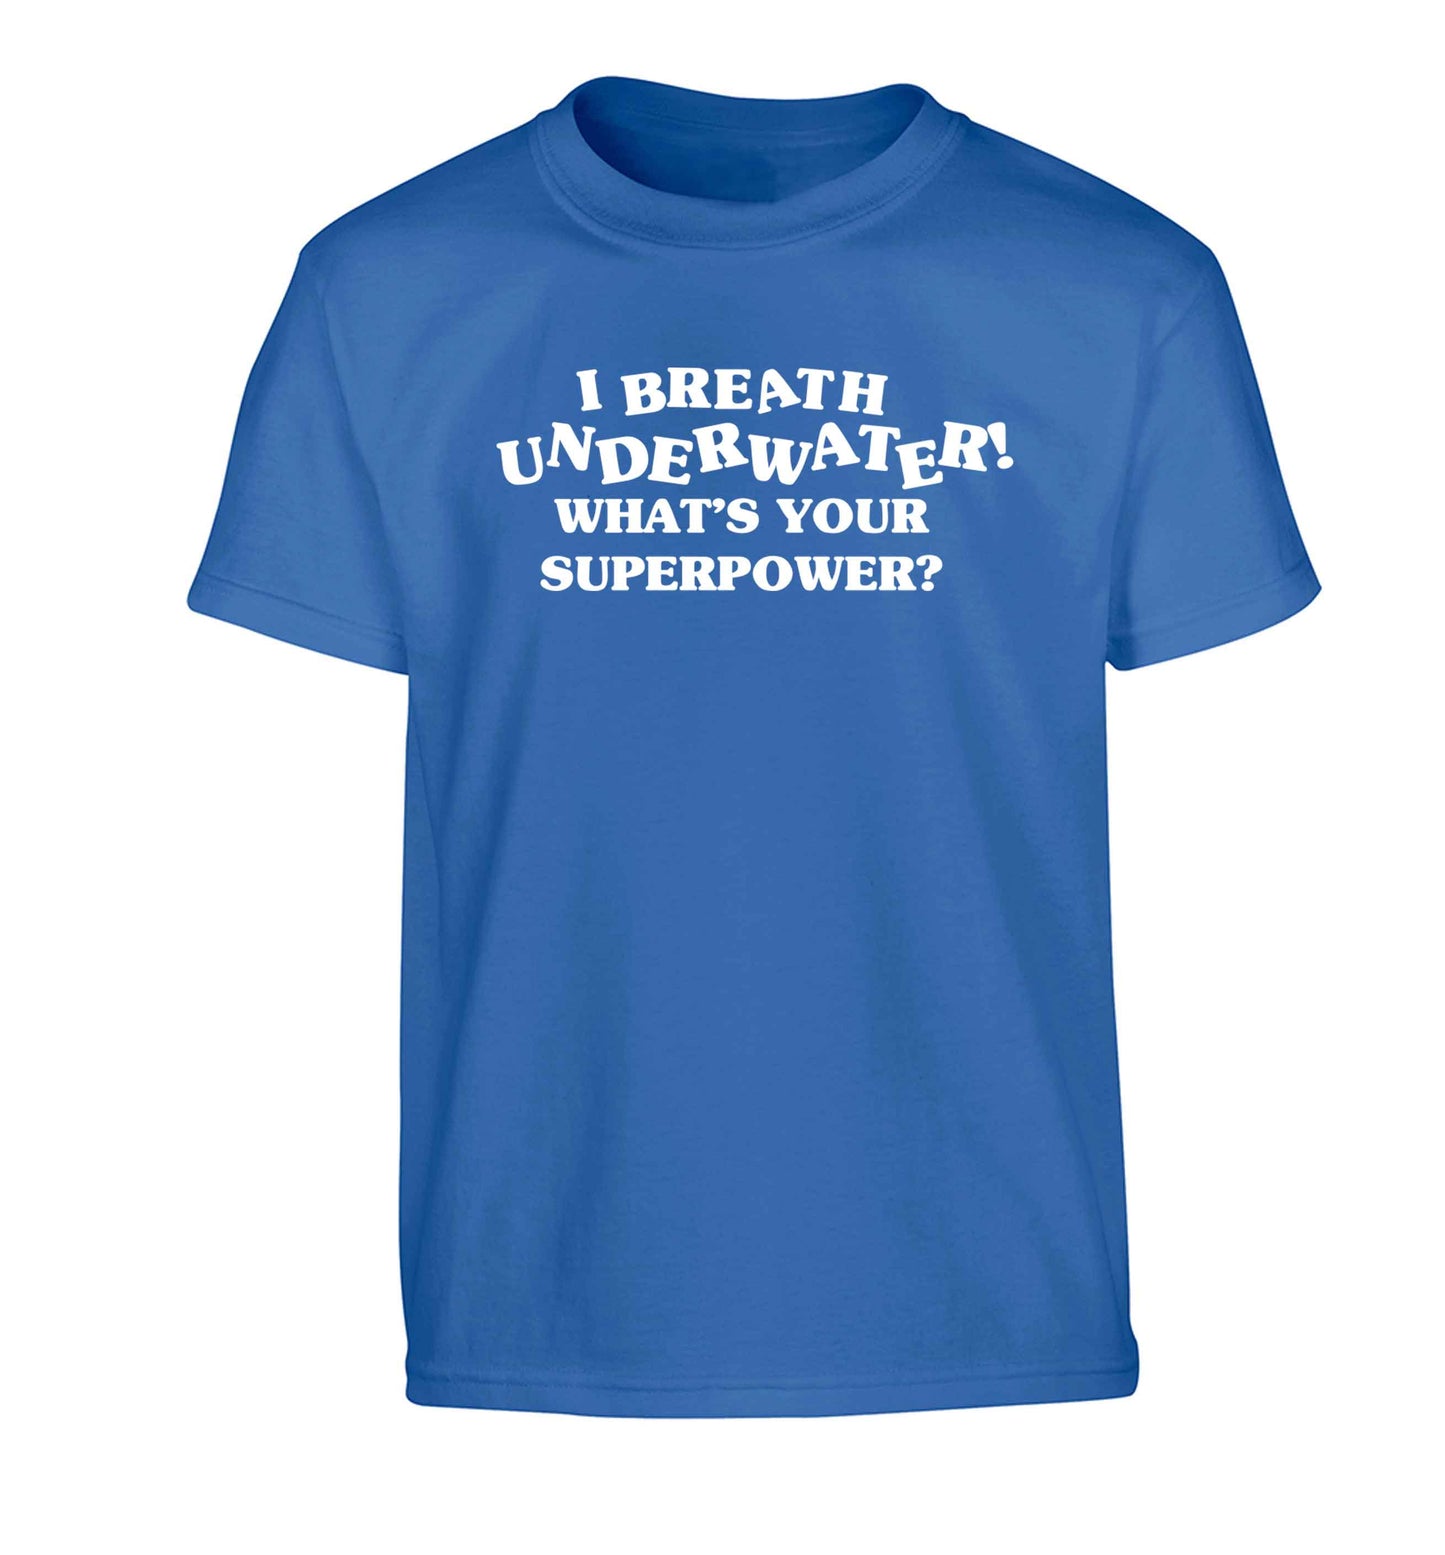 I breath underwater what's your superpower? Children's blue Tshirt 12-13 Years